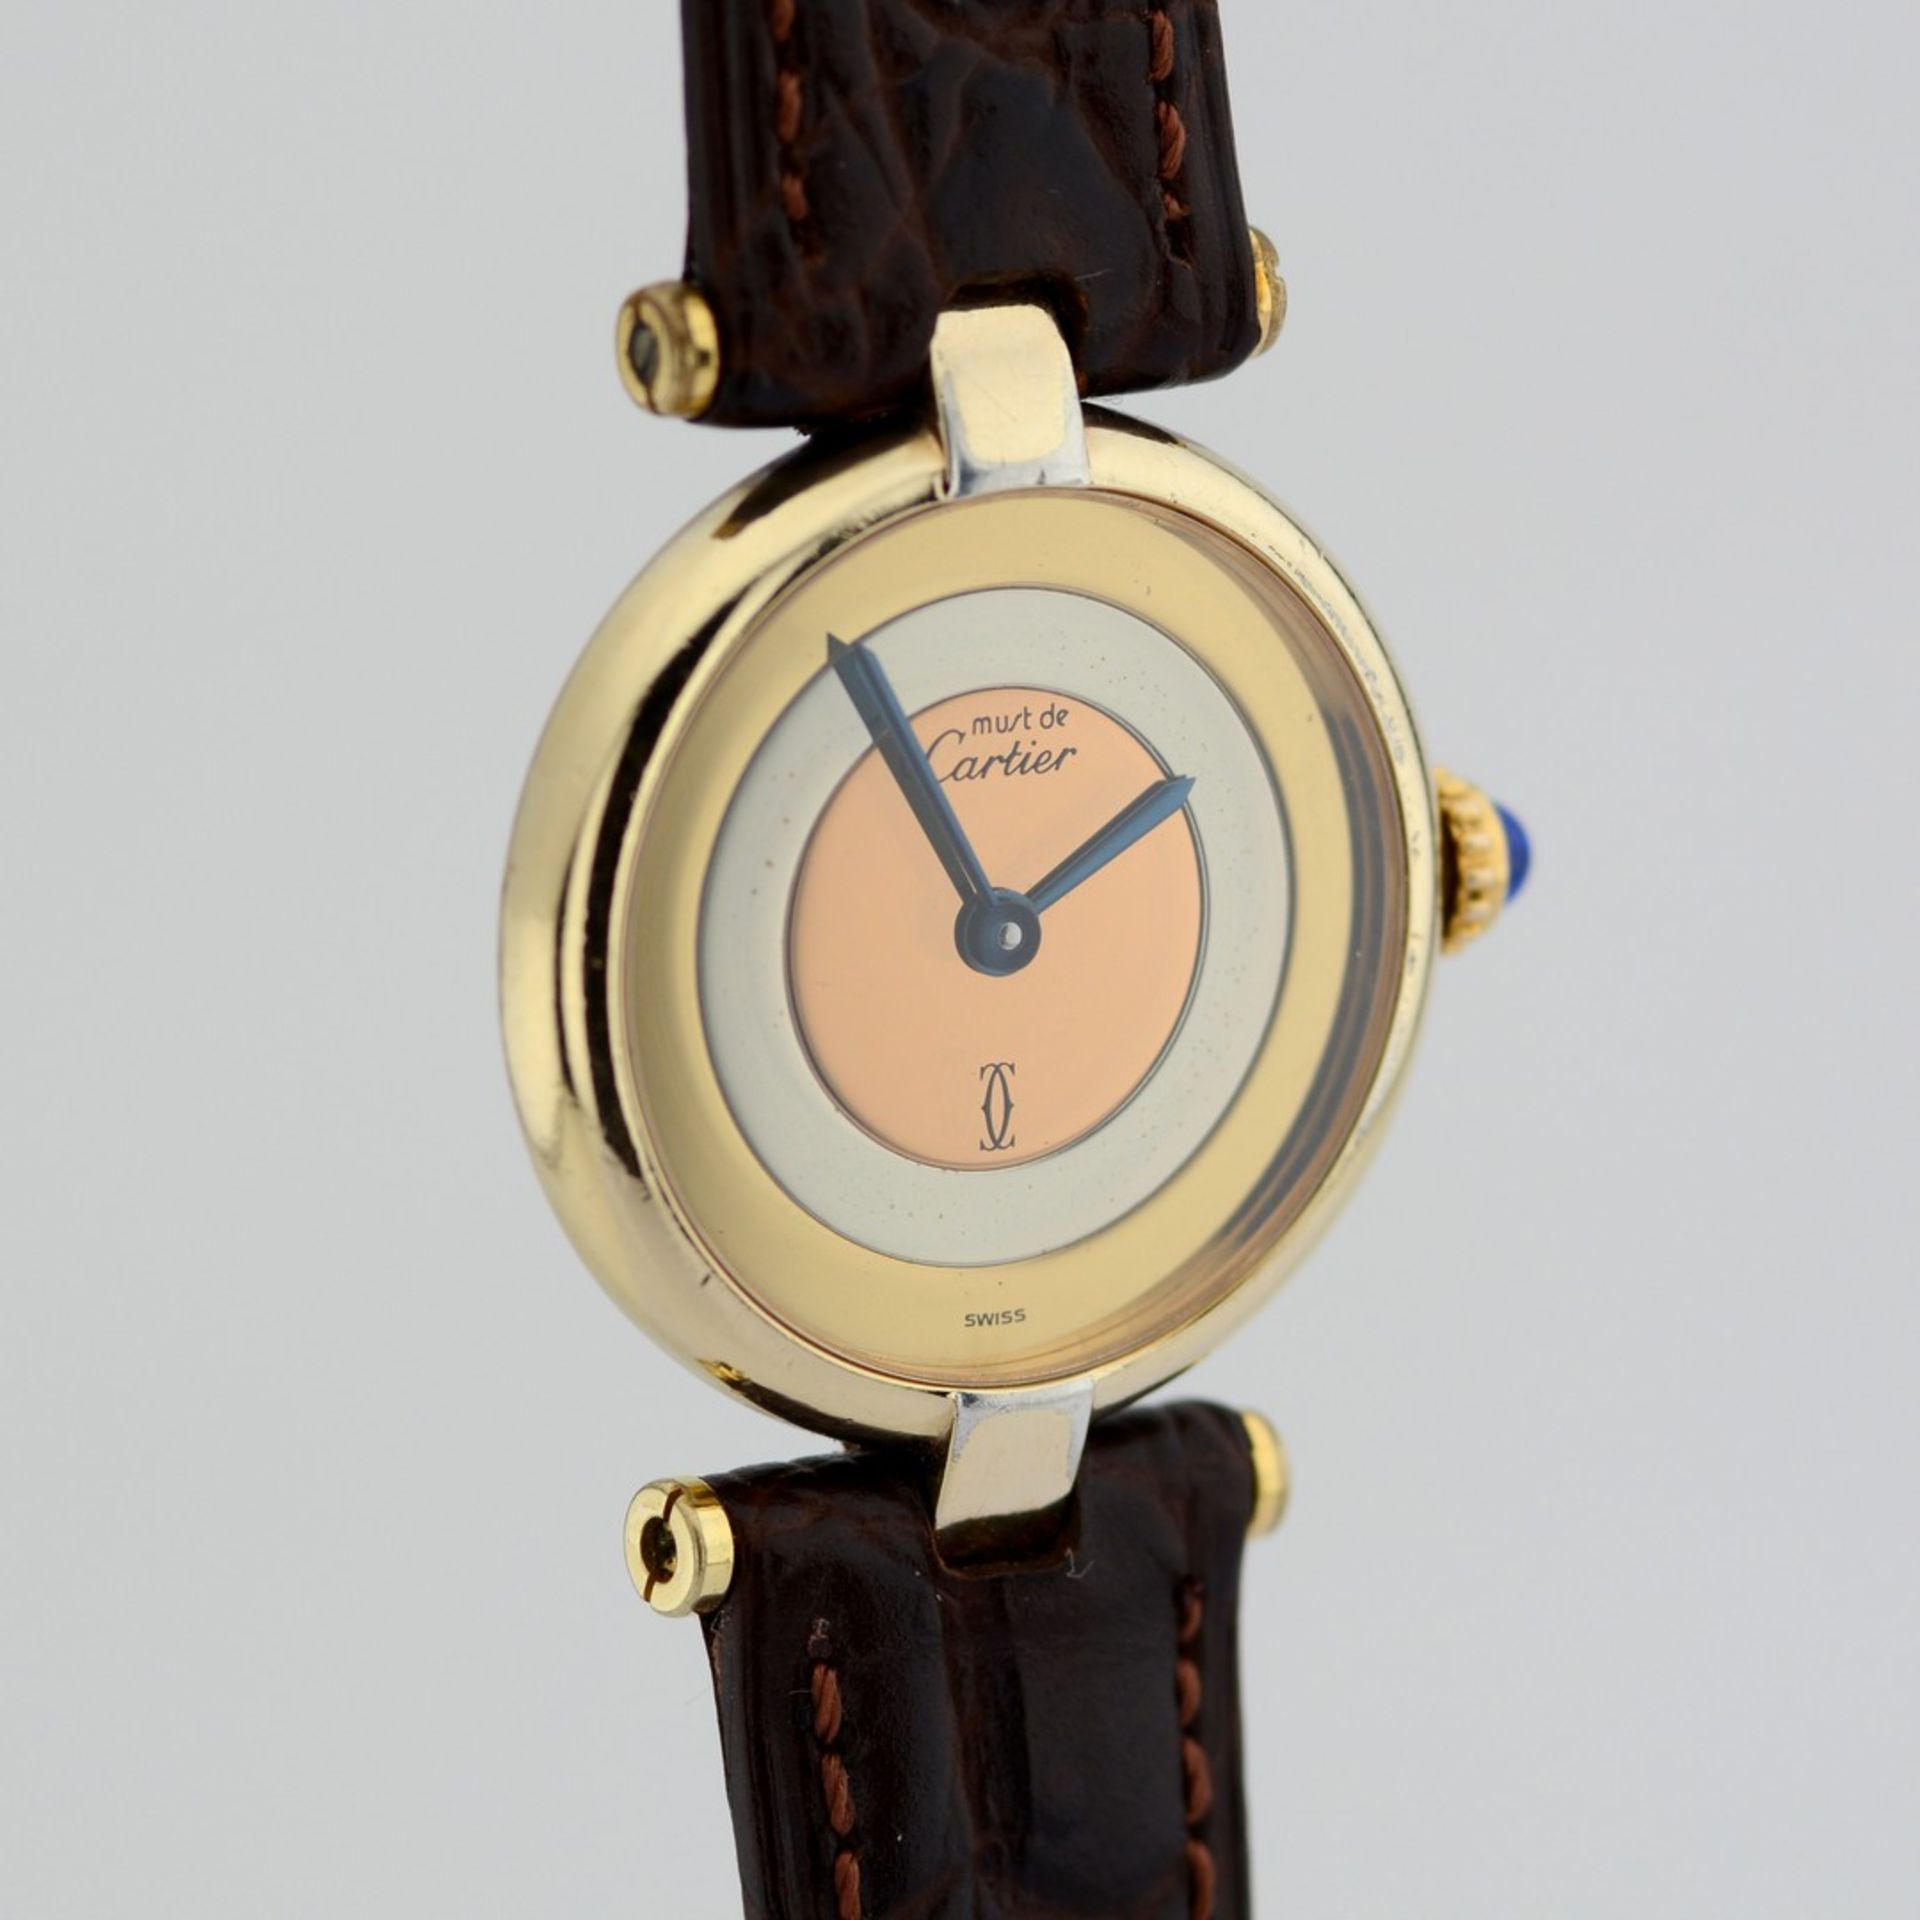 Cartier / Must de - Lady's Steel Wristwatch - Image 4 of 8